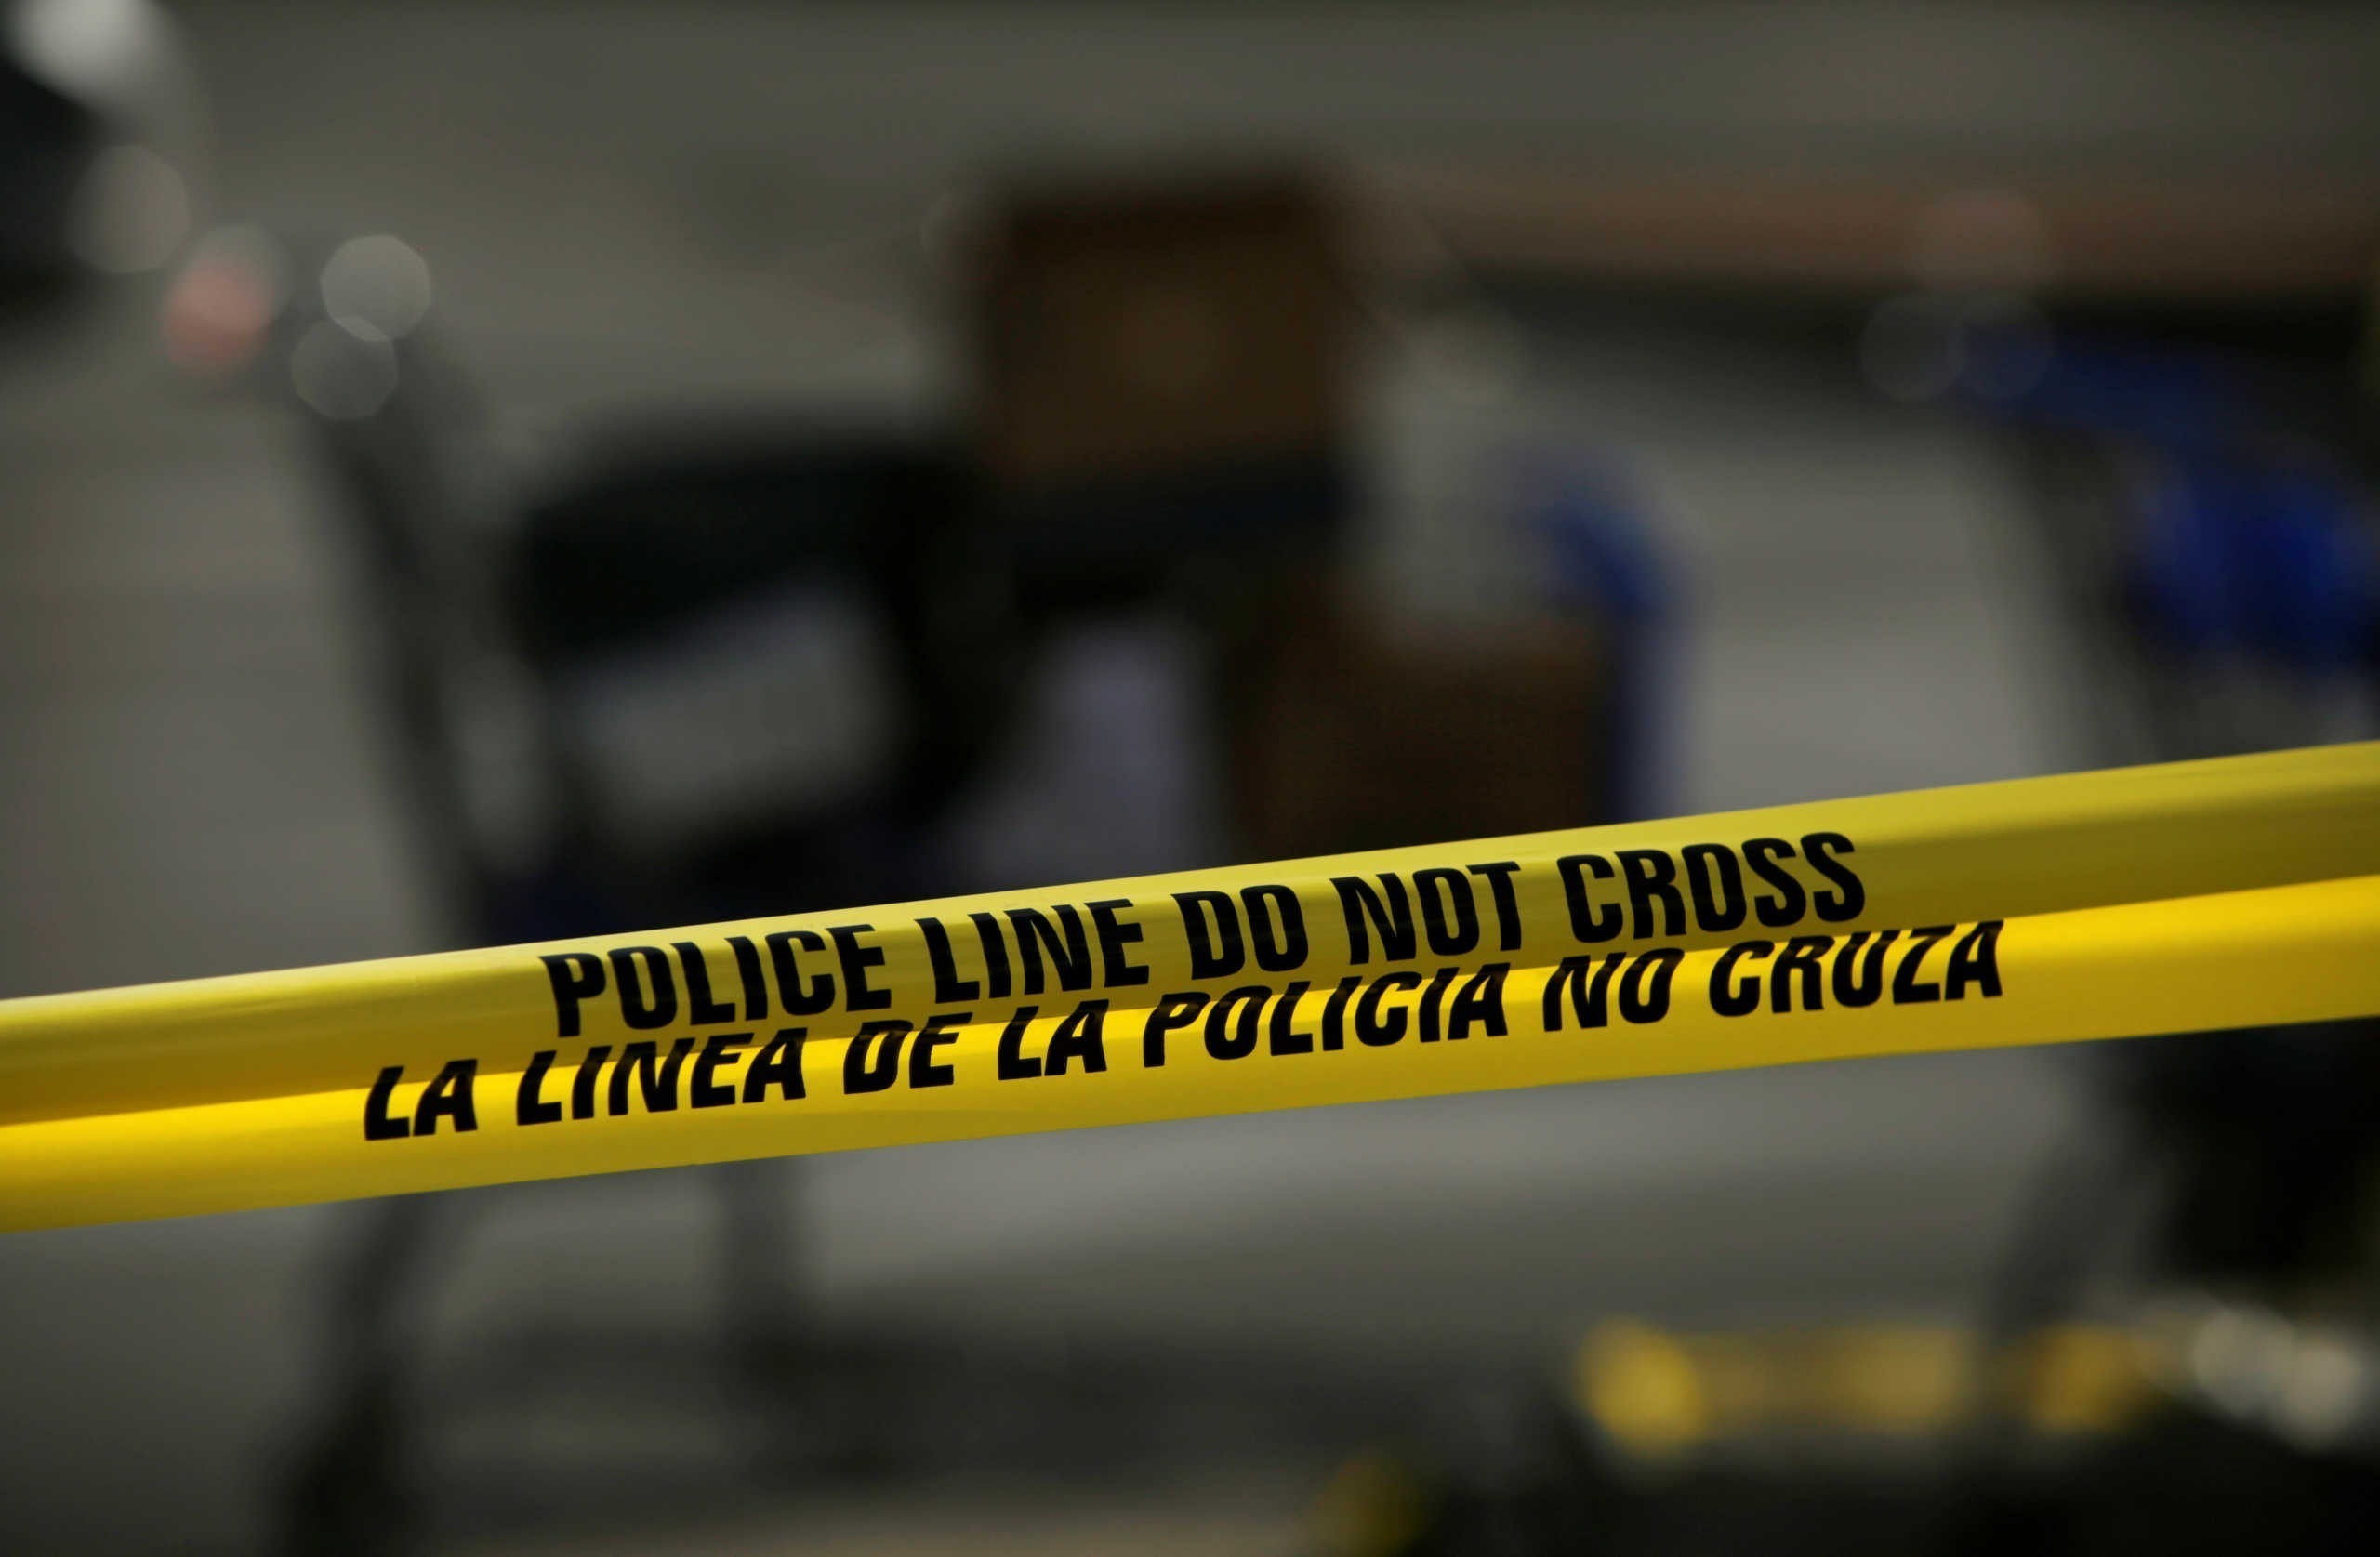 Τέσσερις νεκροί και πέντε τραυματίες μετά από επίθεση με μαχαίρι στο Ιλινόις των ΗΠΑ